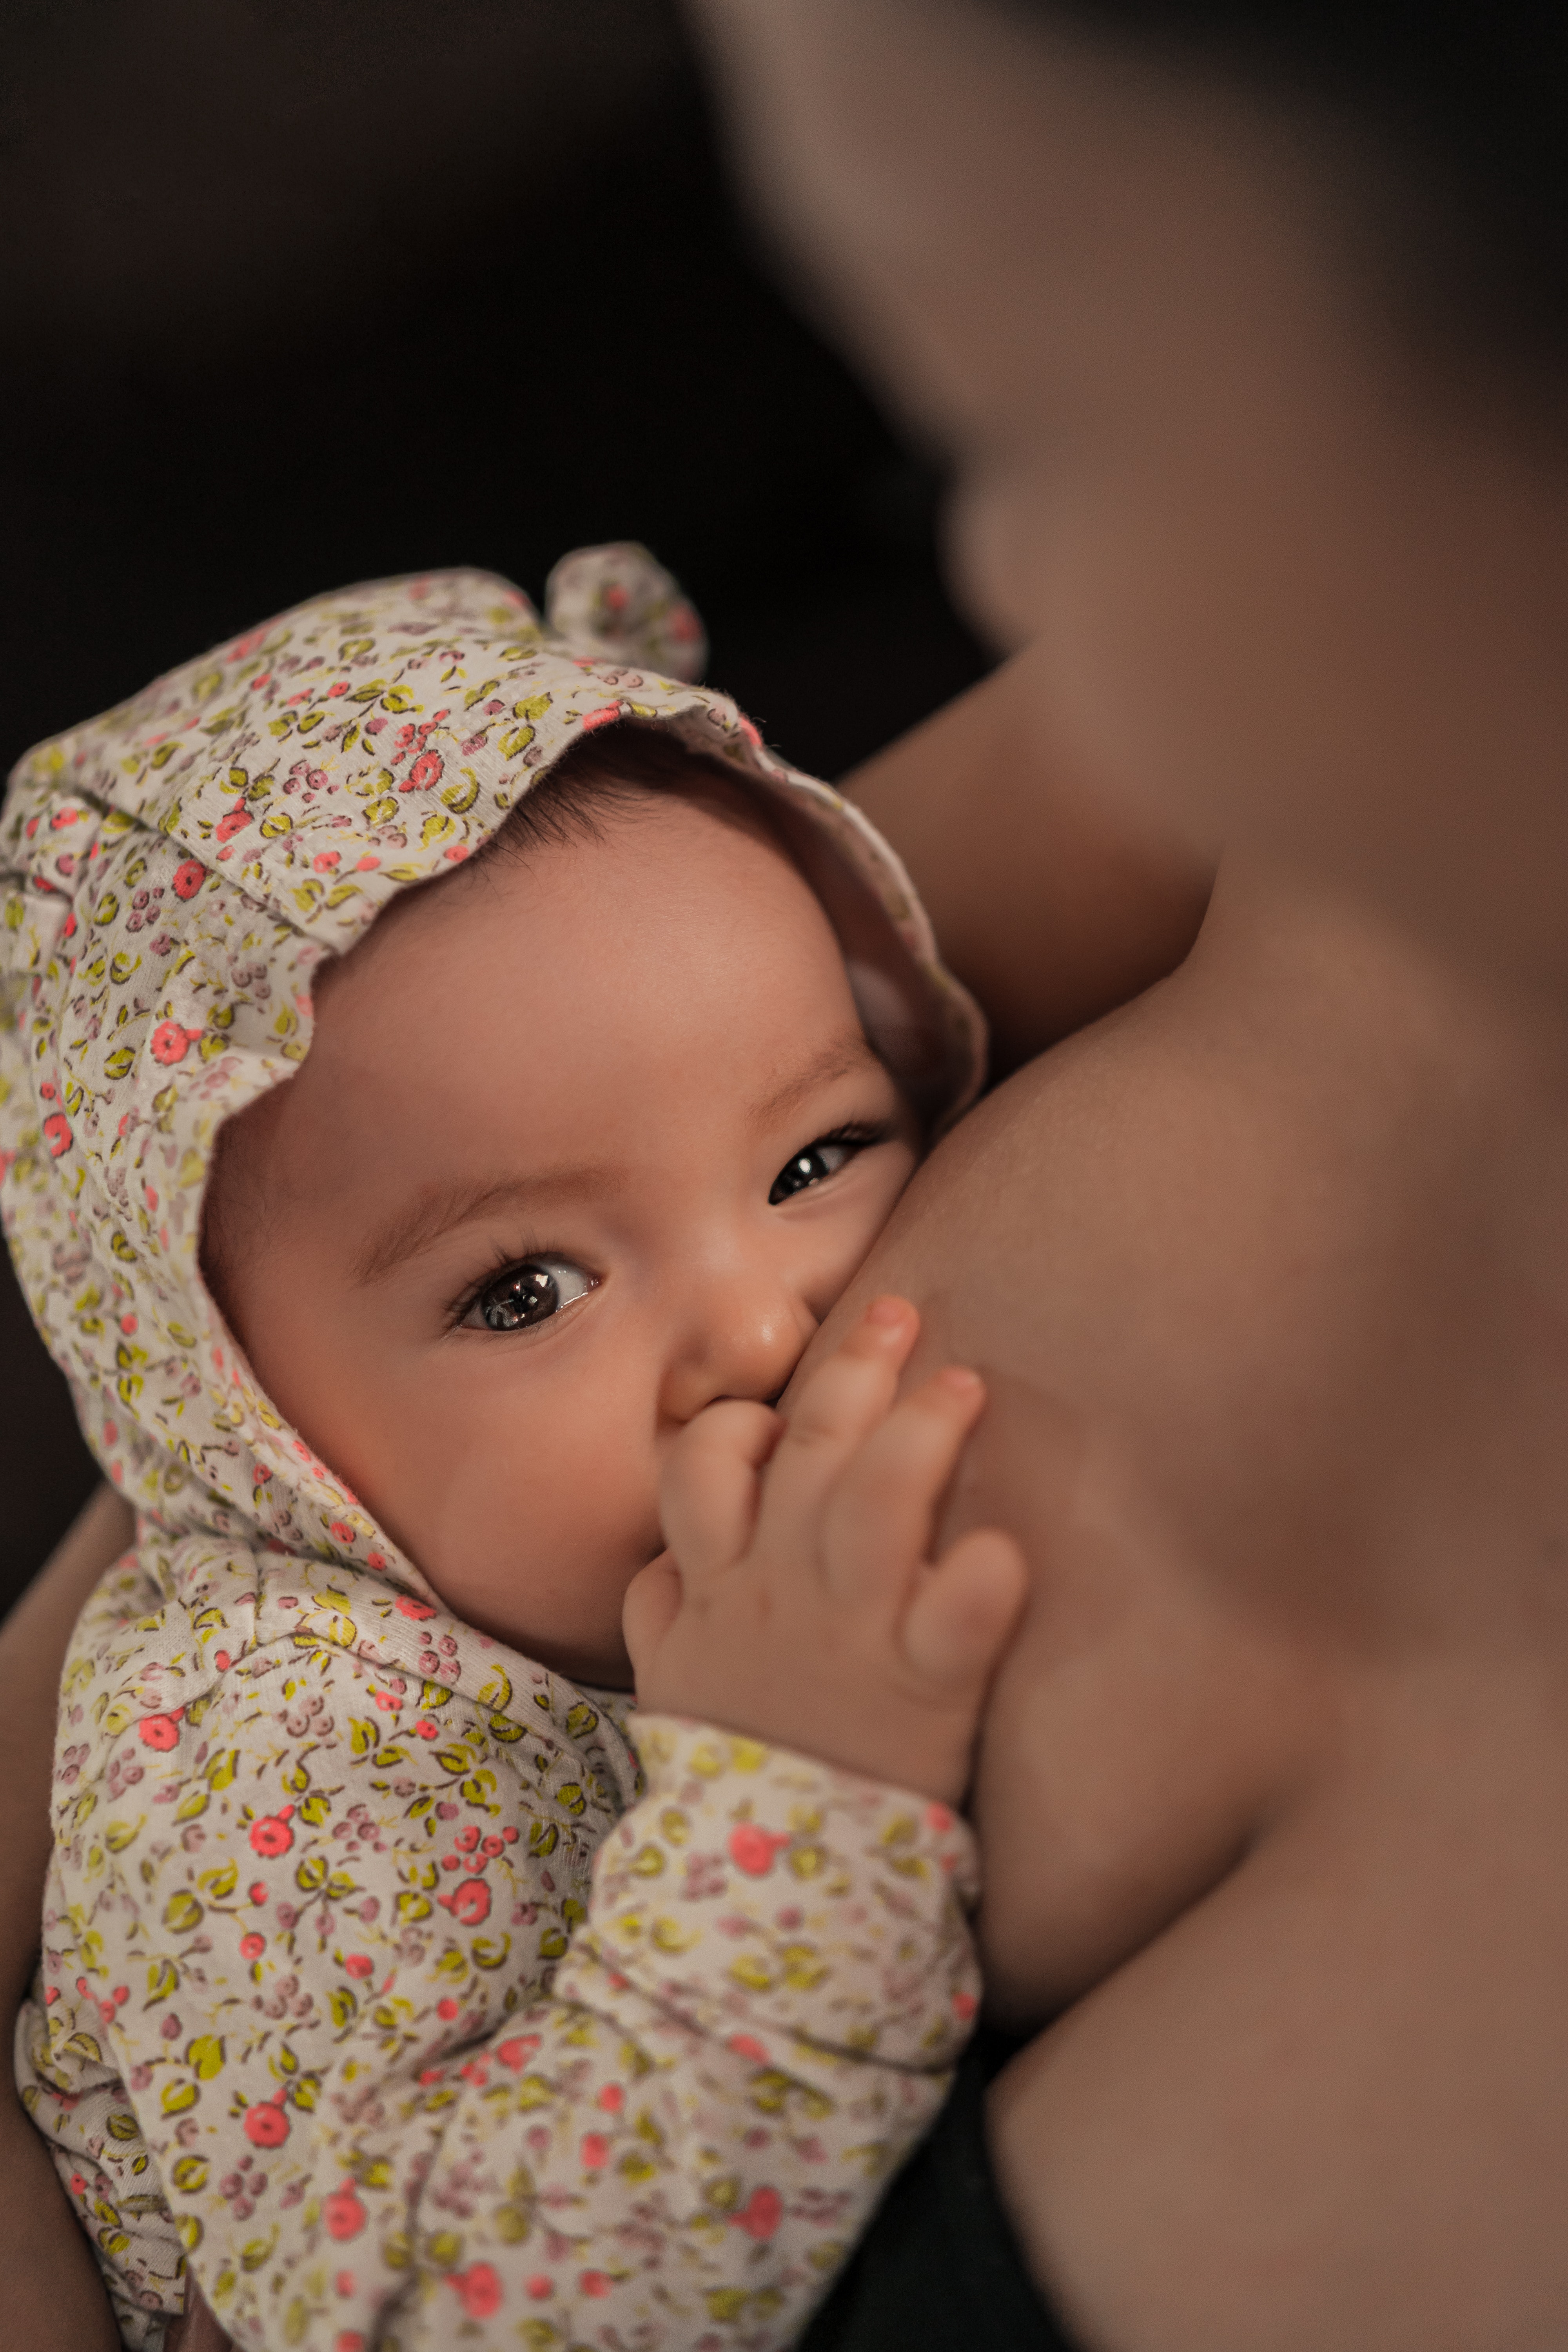 Votre bébé fait-il une confusion sein-tétine ?